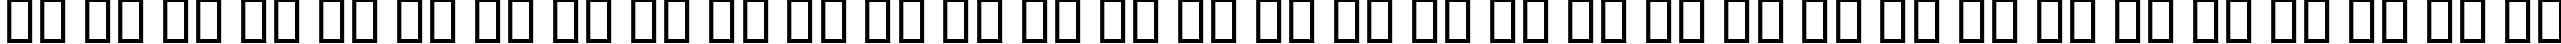 Пример написания русского алфавита шрифтом B Elm Border